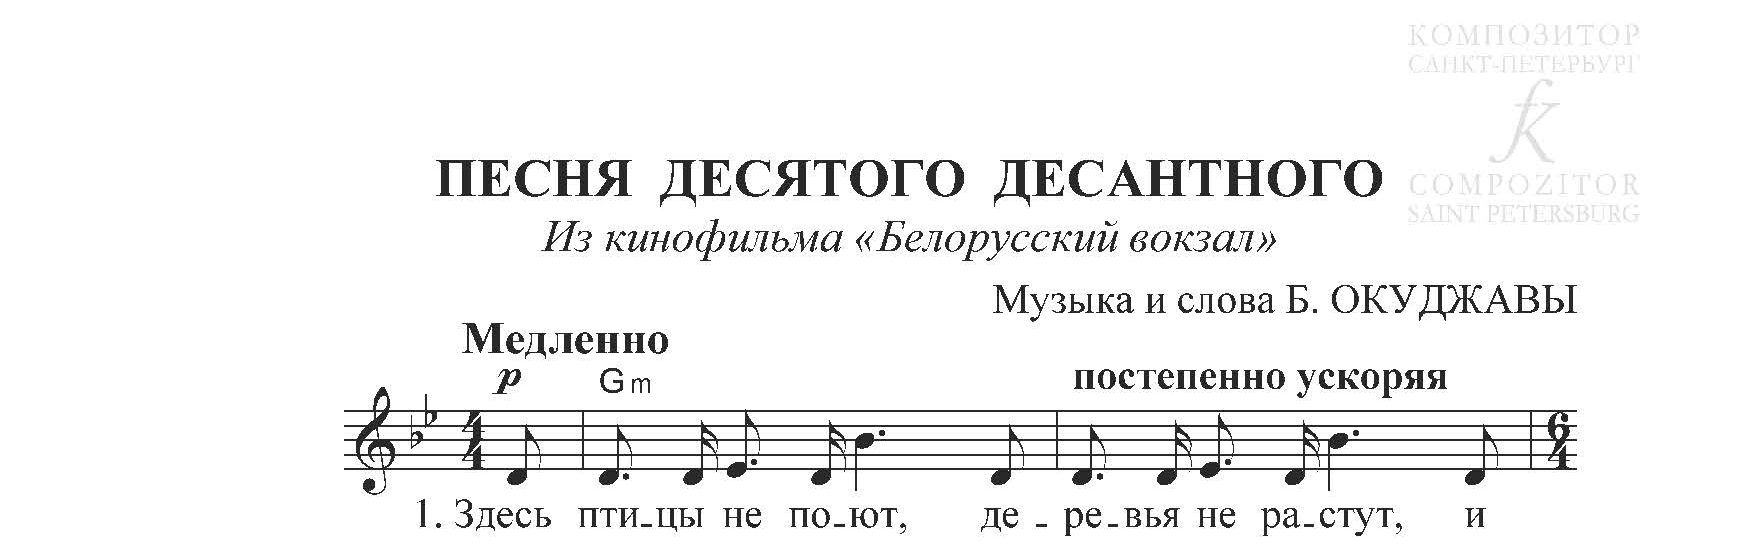 Десятый наш десантный слова. Песня из к ф белорусский вокзал текст. Ноты для фортепиано десятый наш десятый десантный. Белорусский вокзал песня текст.